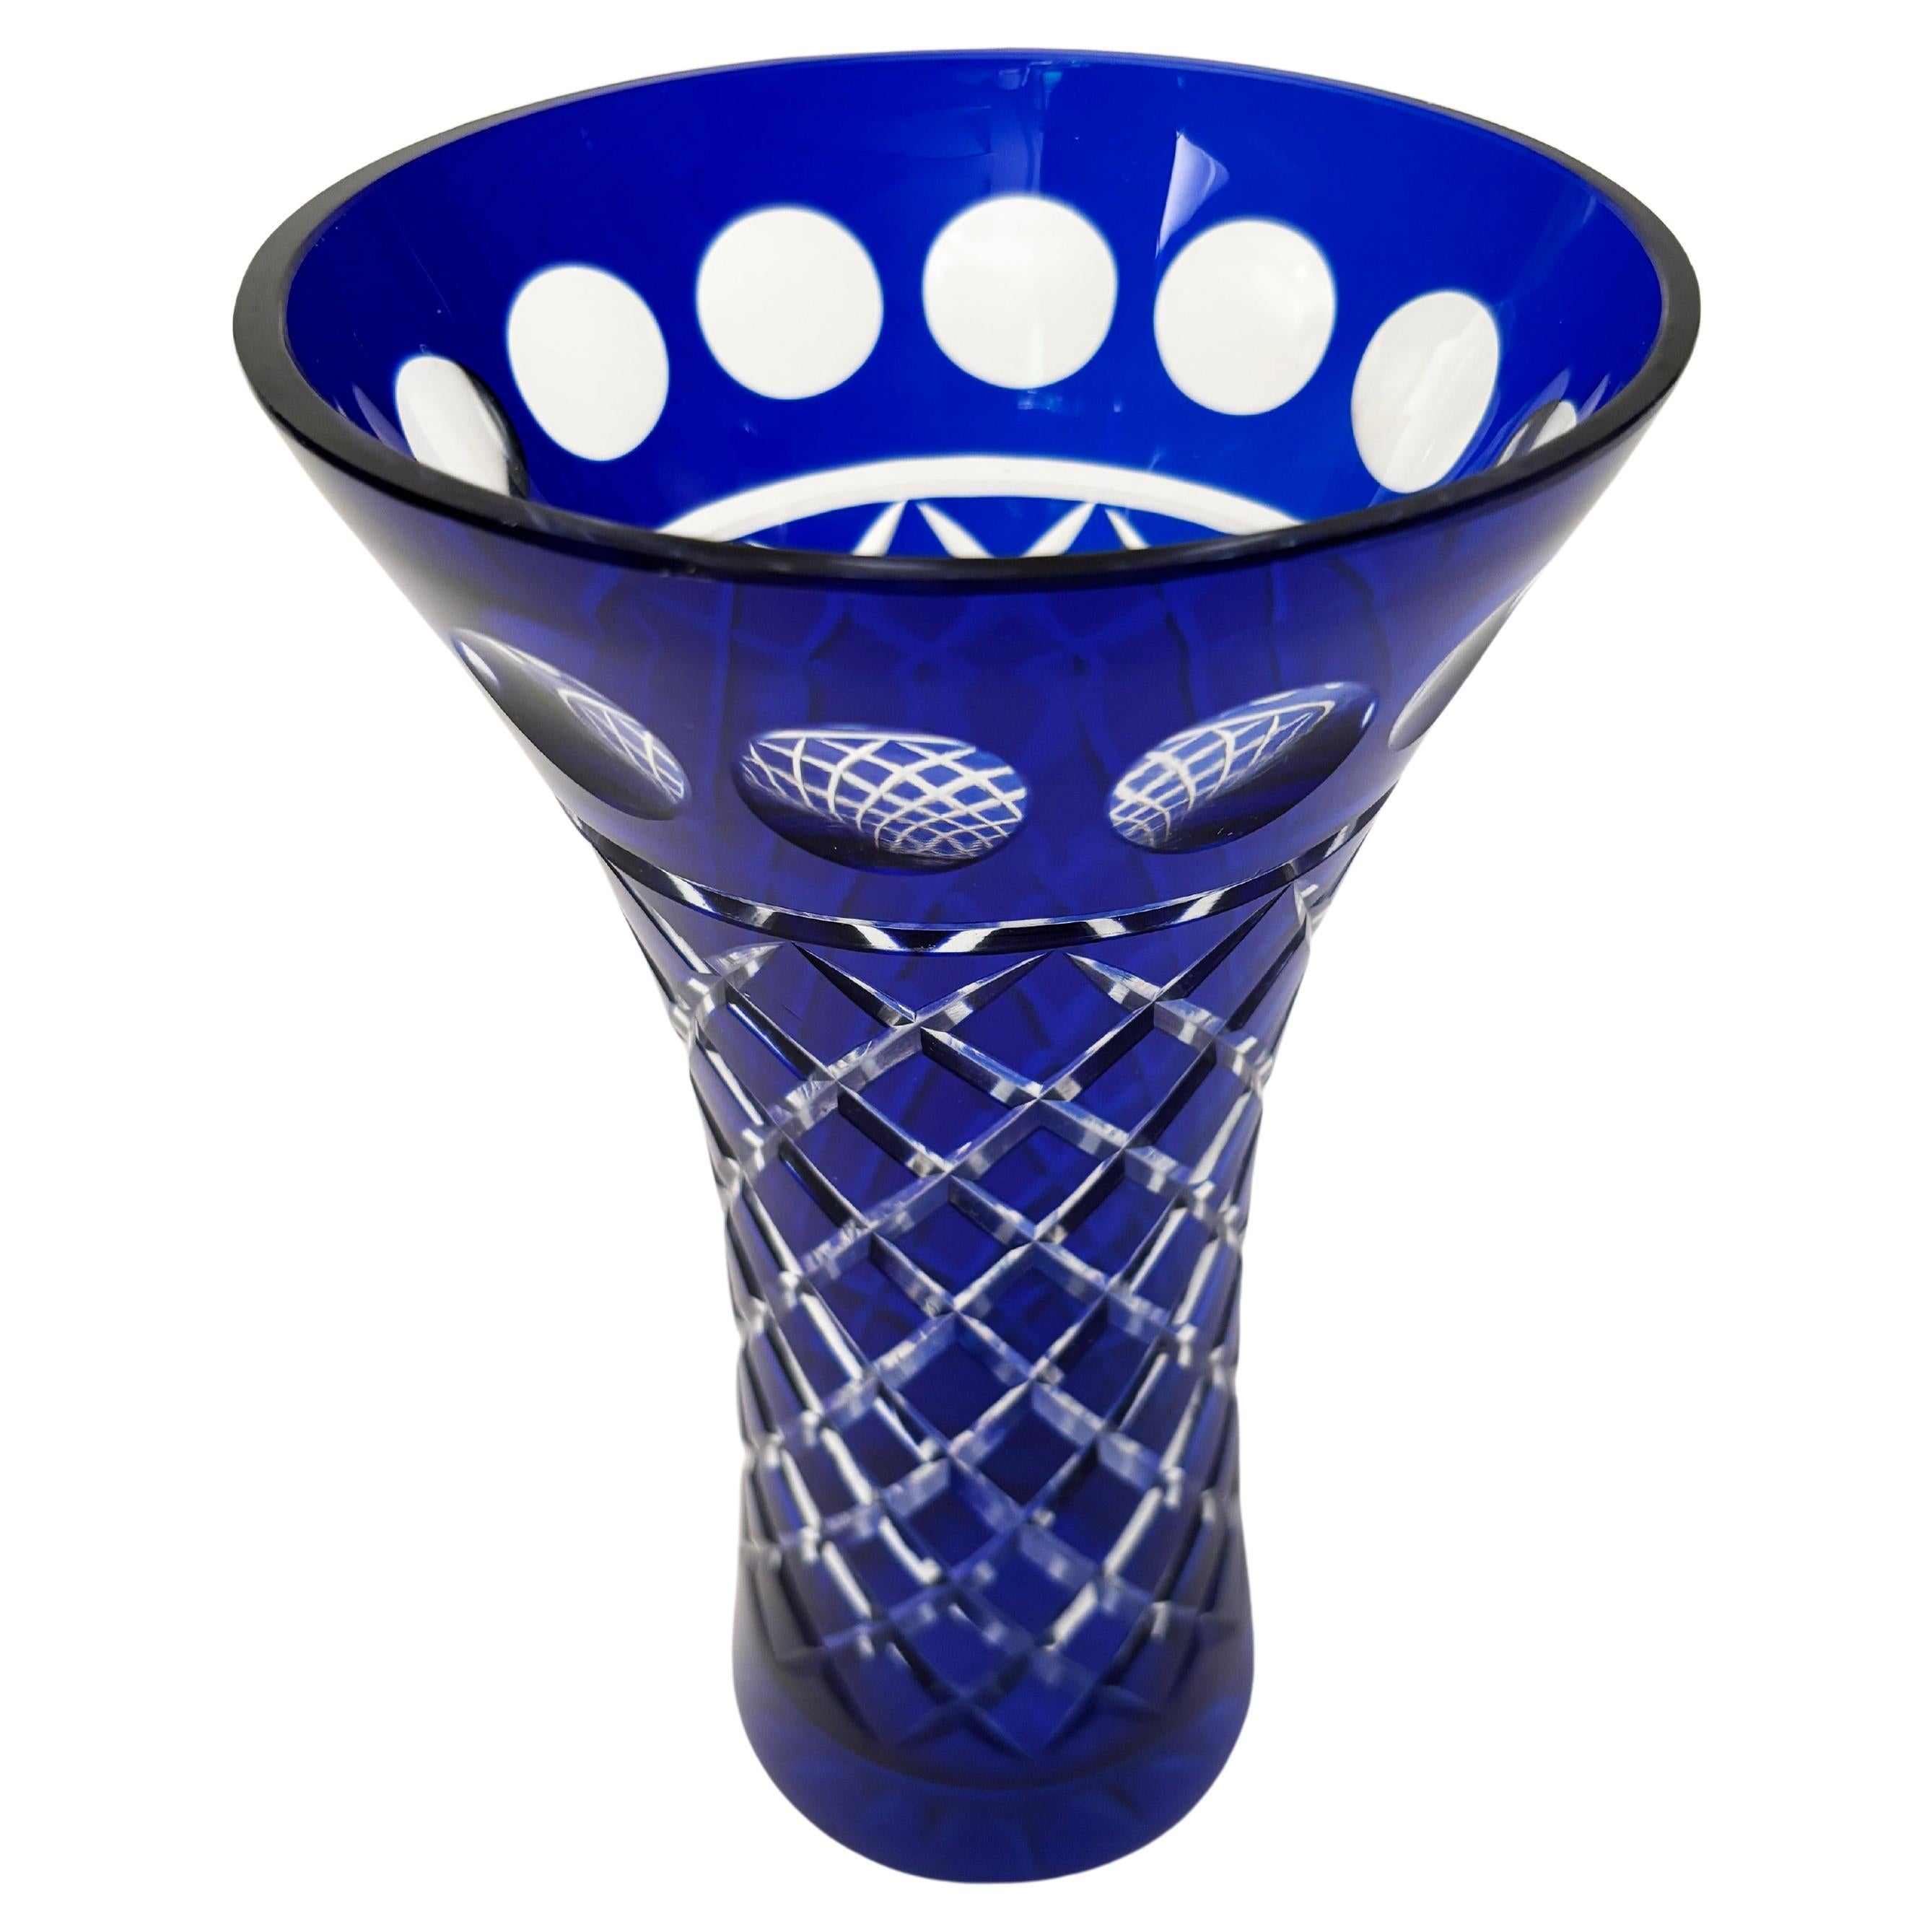 Ce superbe vase Bohème en cristal bleu cobalt de Moser est créé à l'aide d'une méthode de verre bleu cobalt taillé dans du verre clair qui crée des effets spectaculaires. Les motifs circulaires, associés au corps taillé en diamant, le tout sur un